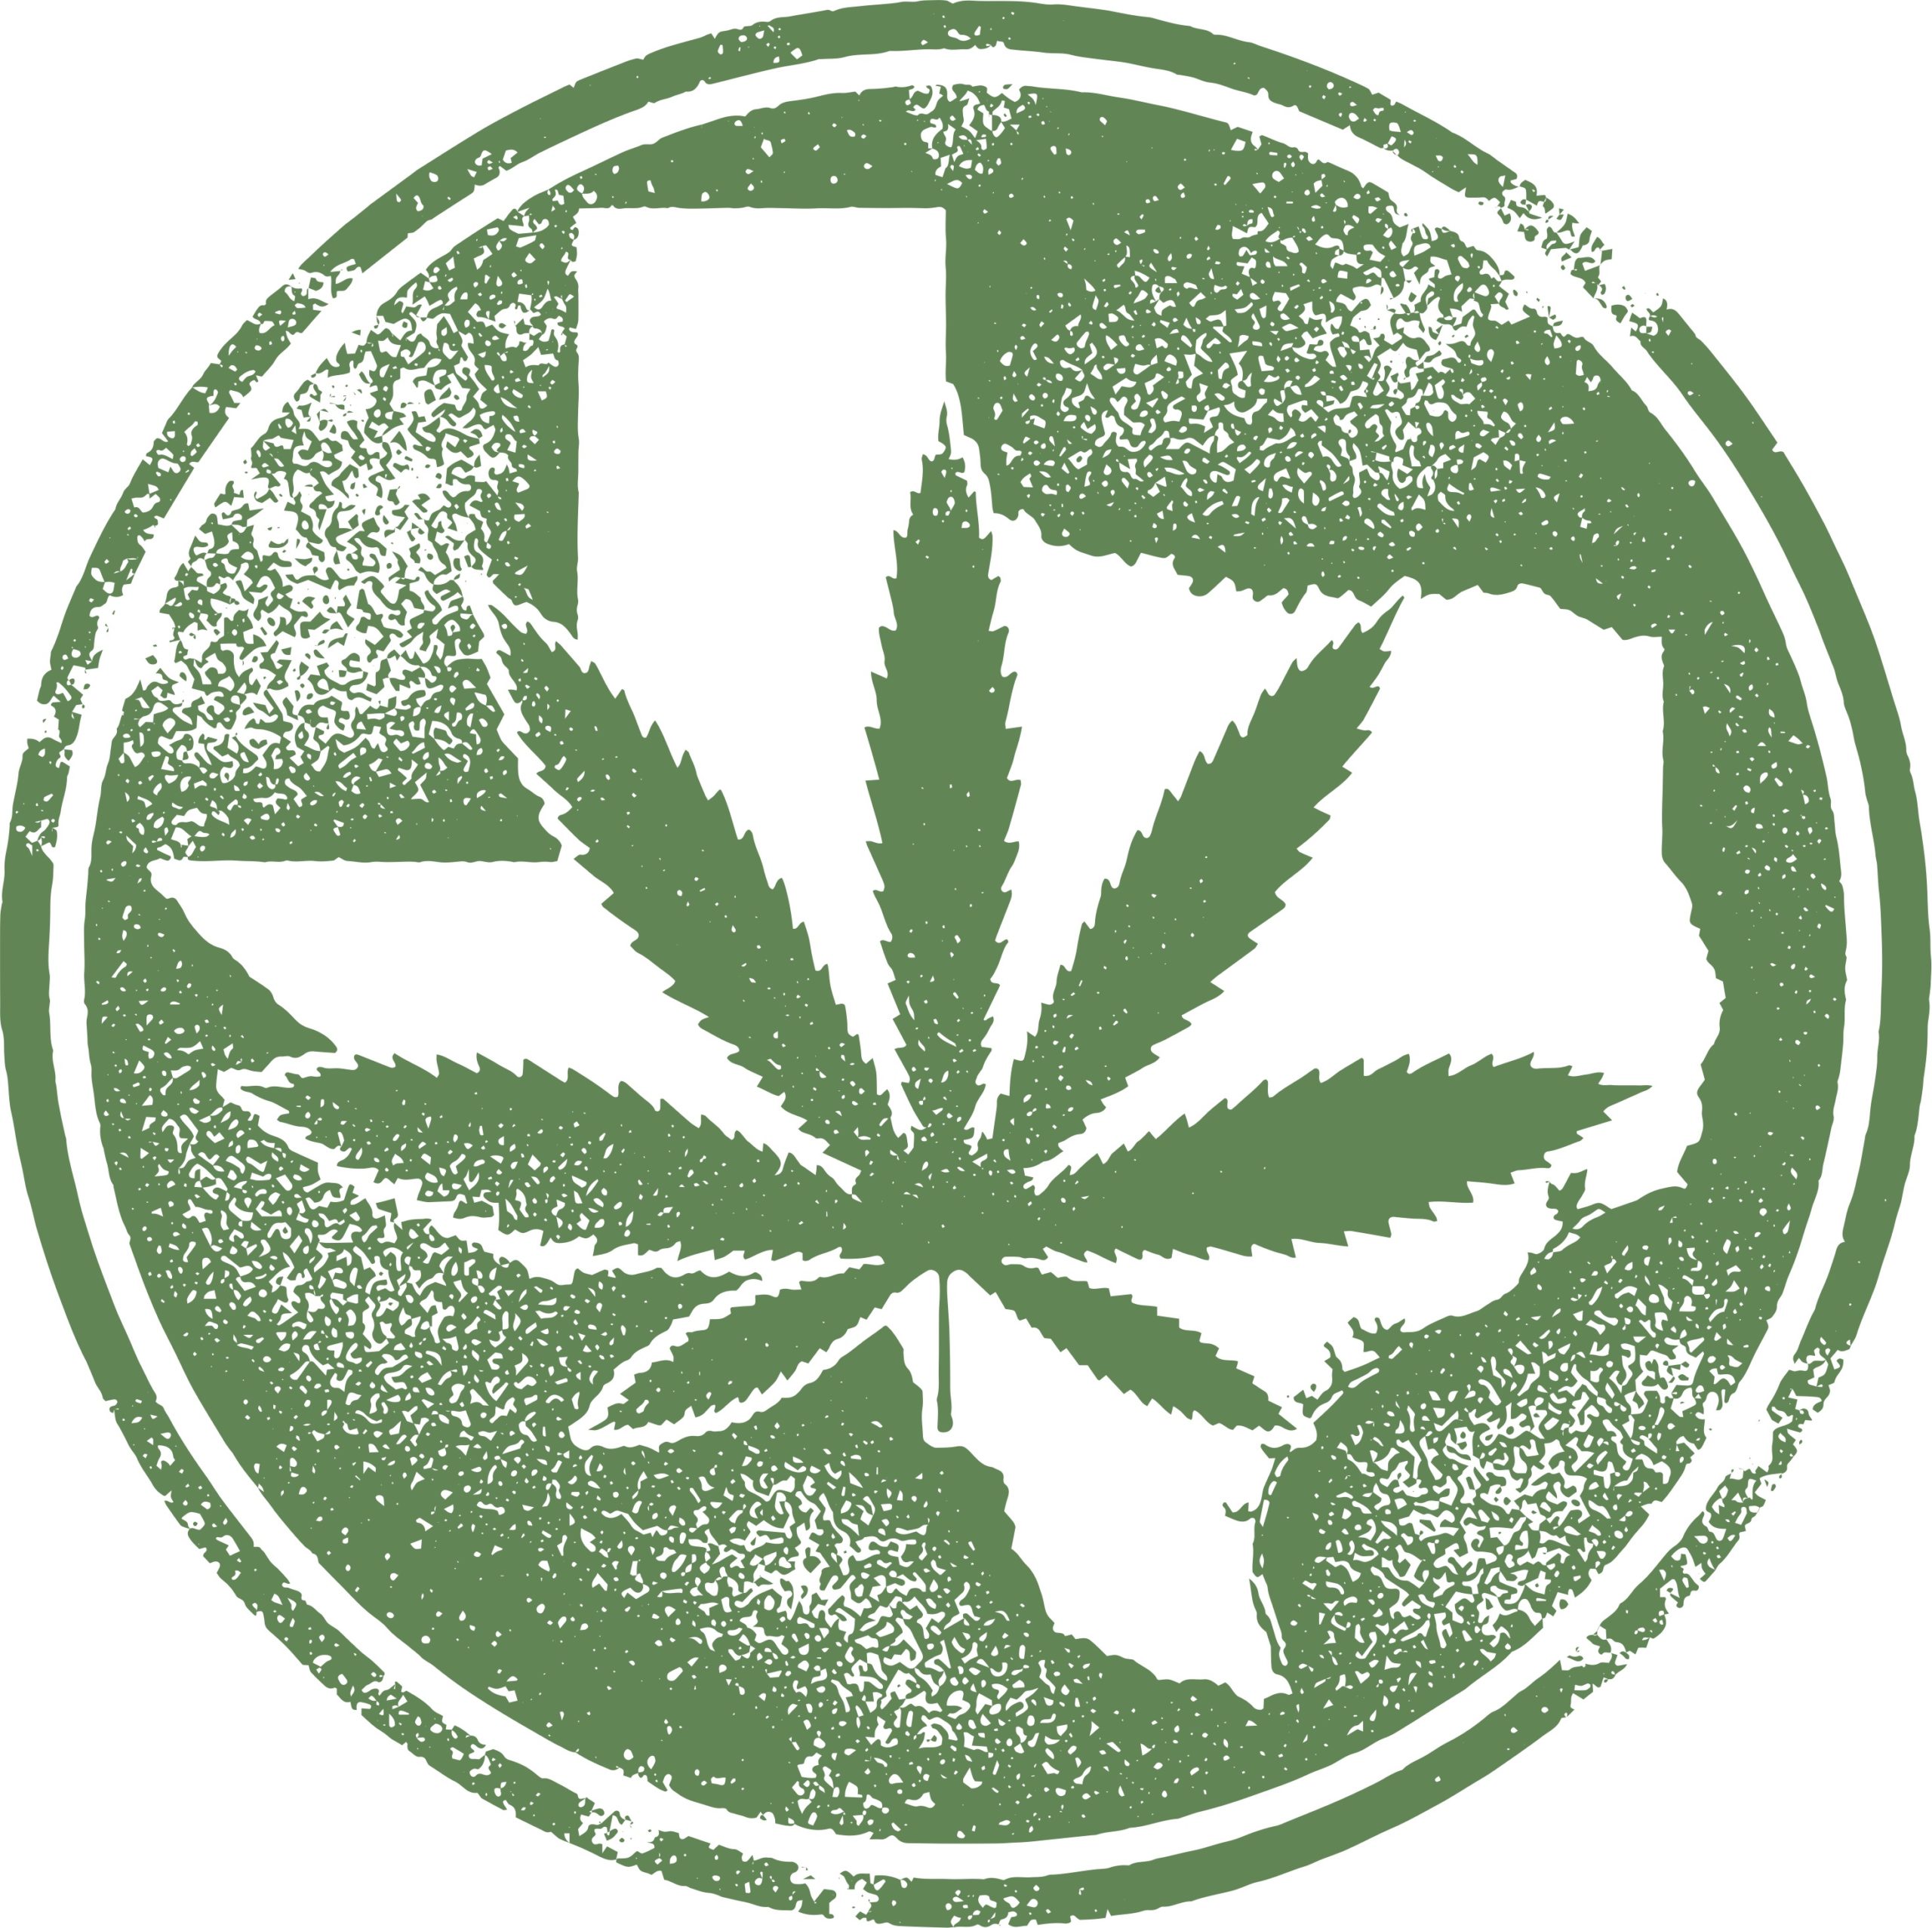 Growing weed in texas